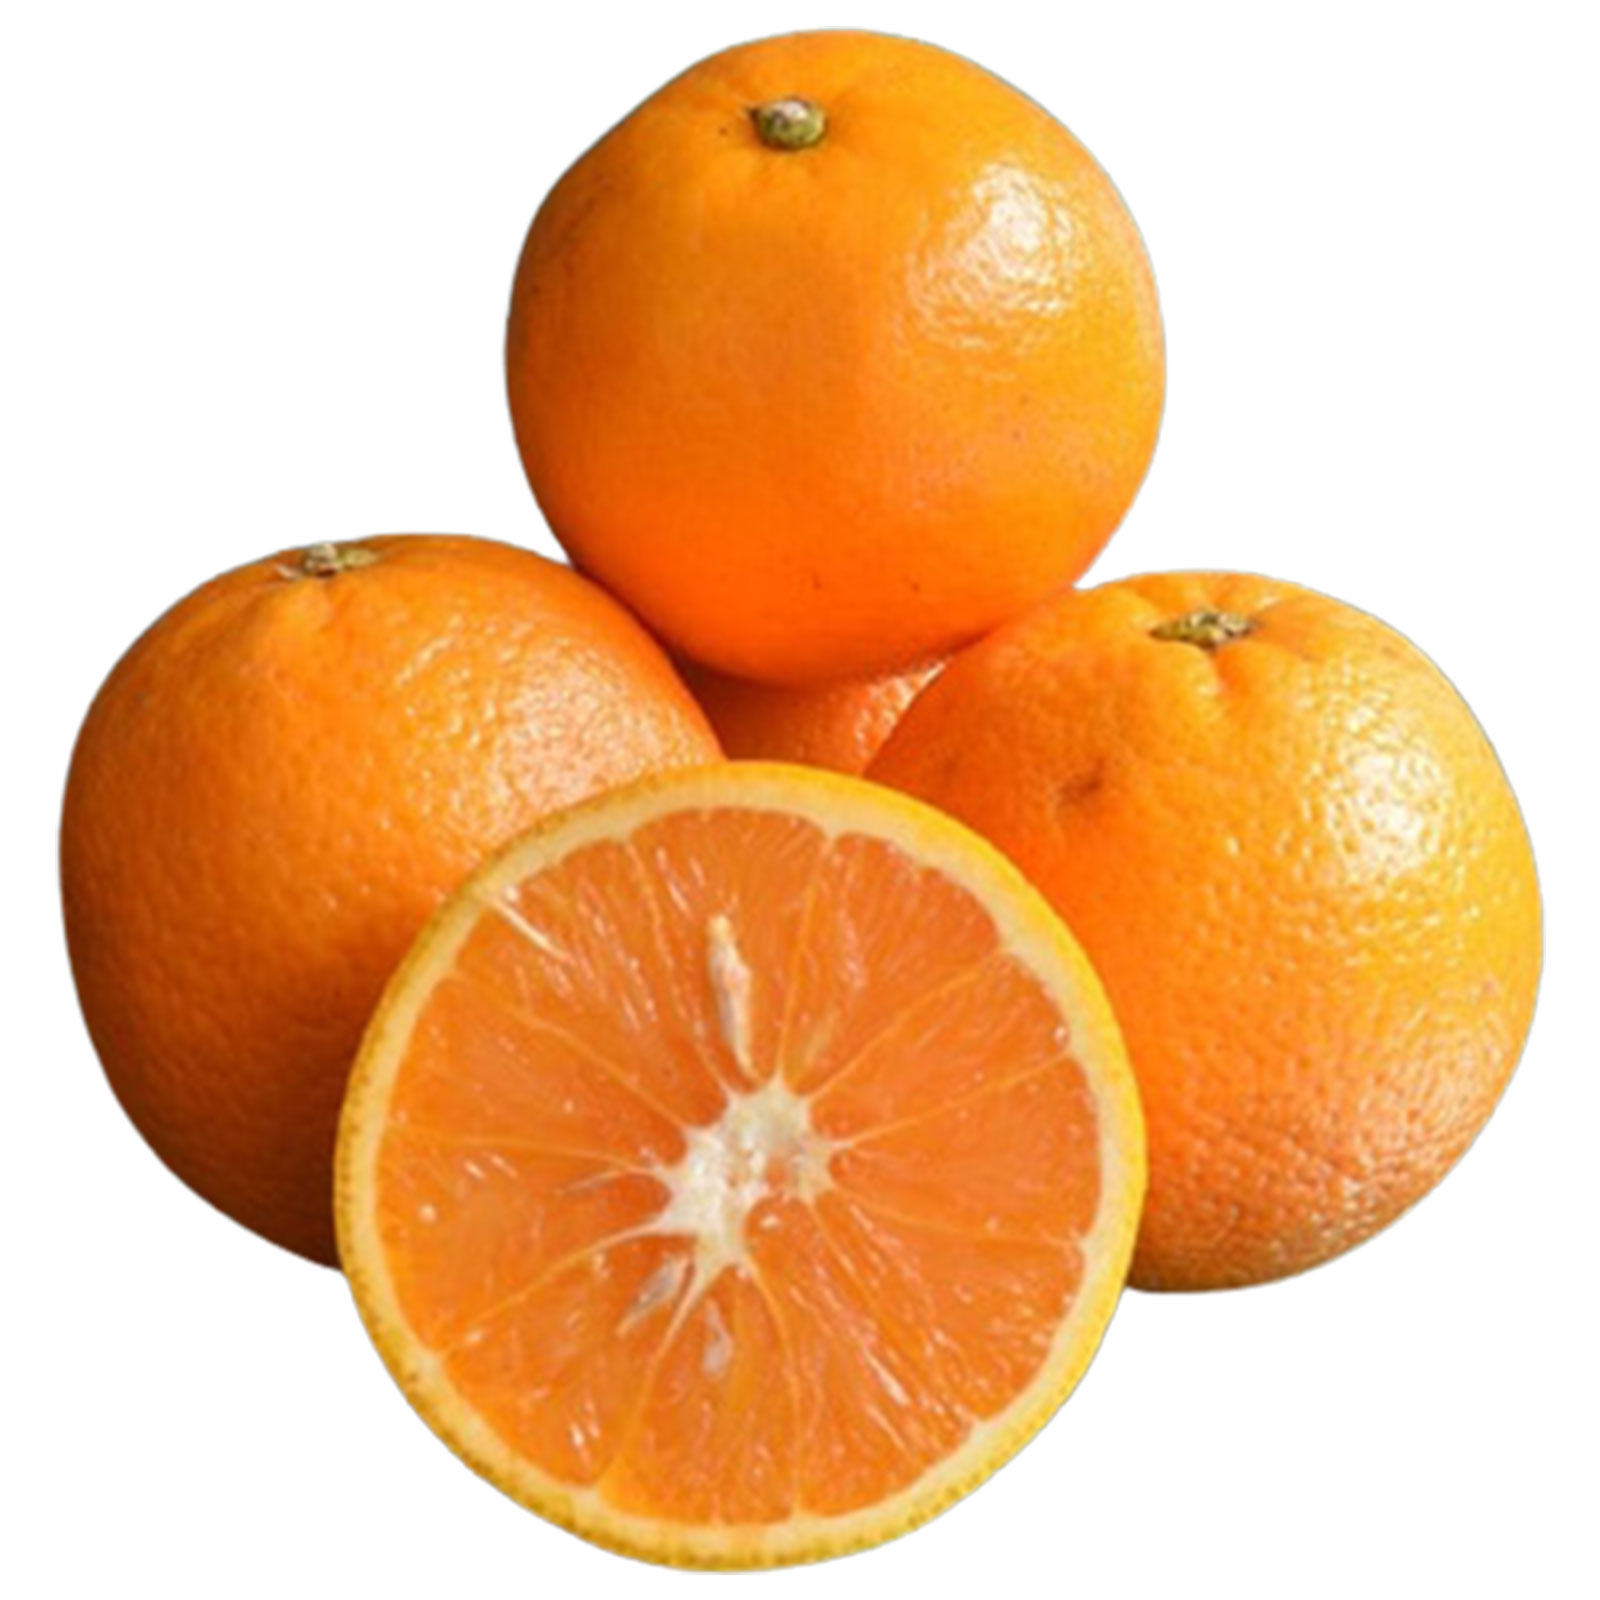 মালটা (Orange)